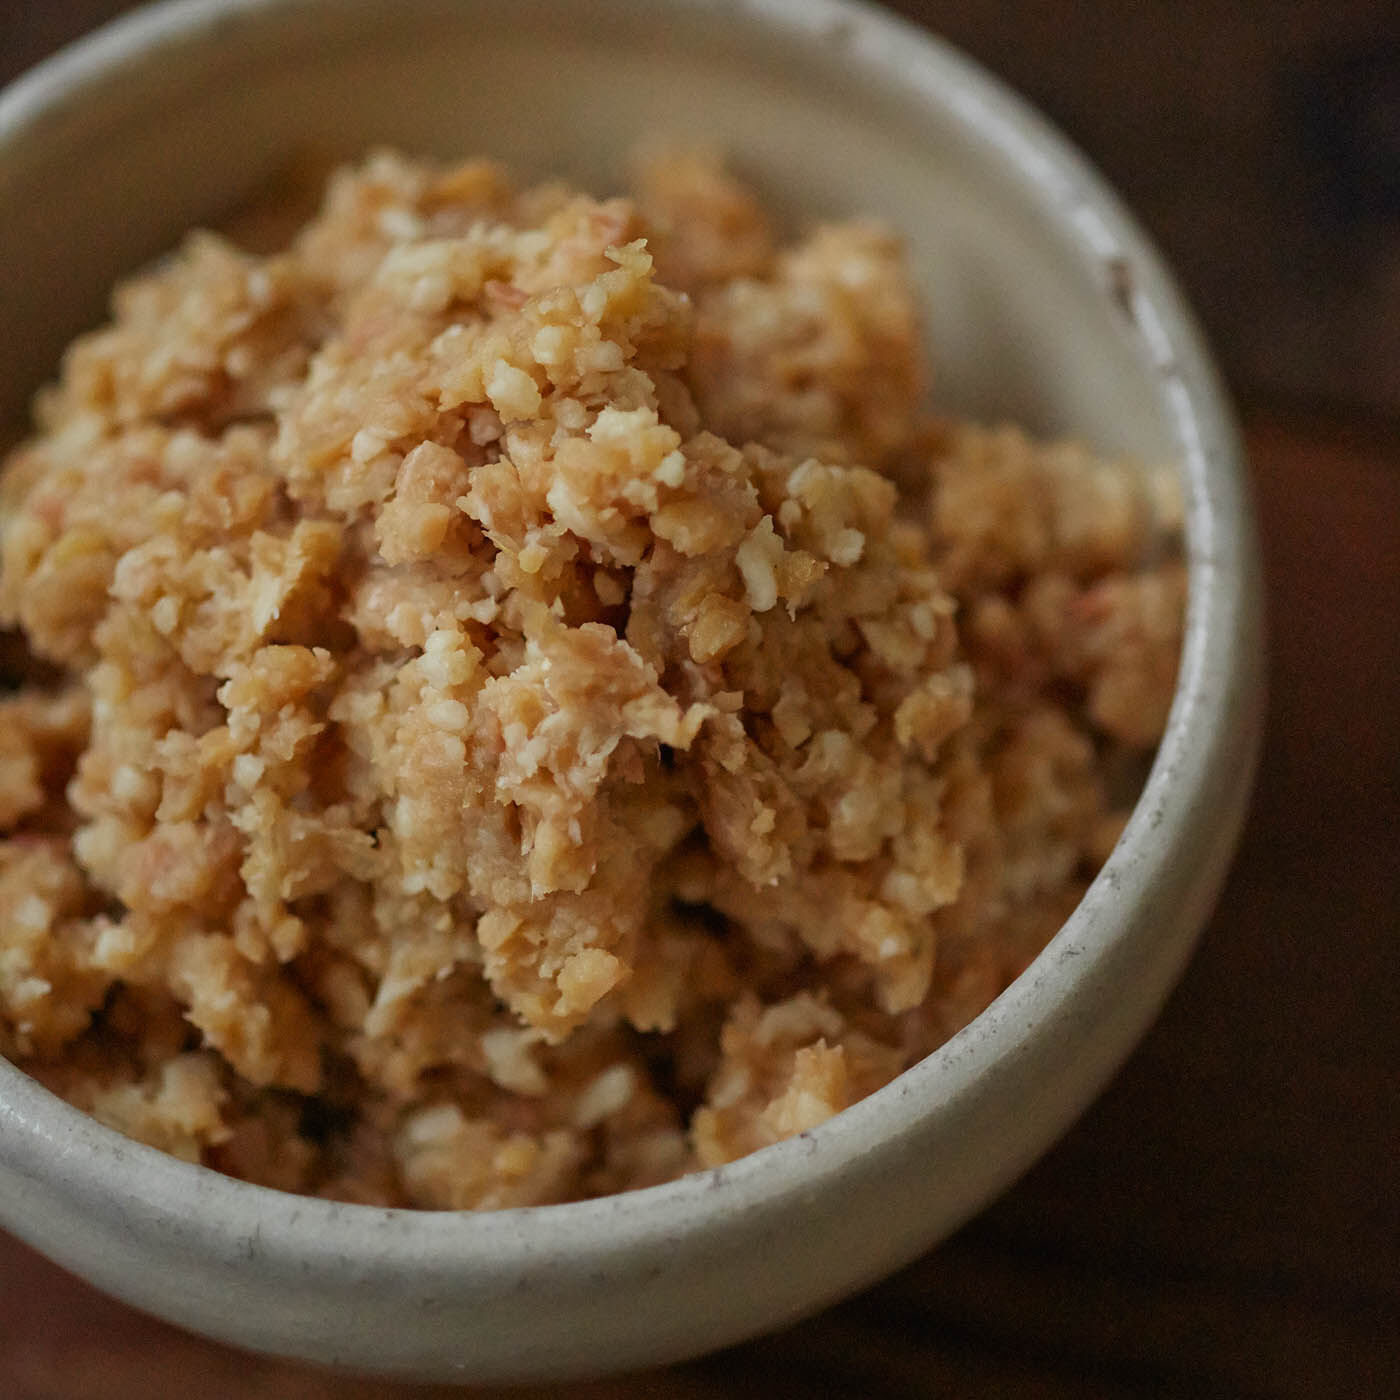 Natucul Chou Club(ナチュカル・シュークラブ)|熊本貝島商店の米みそキット|米みそとは、大豆に米こうじを加えて作ったみそです。おみそ汁はいつまでも懐かしい味、ですよね。